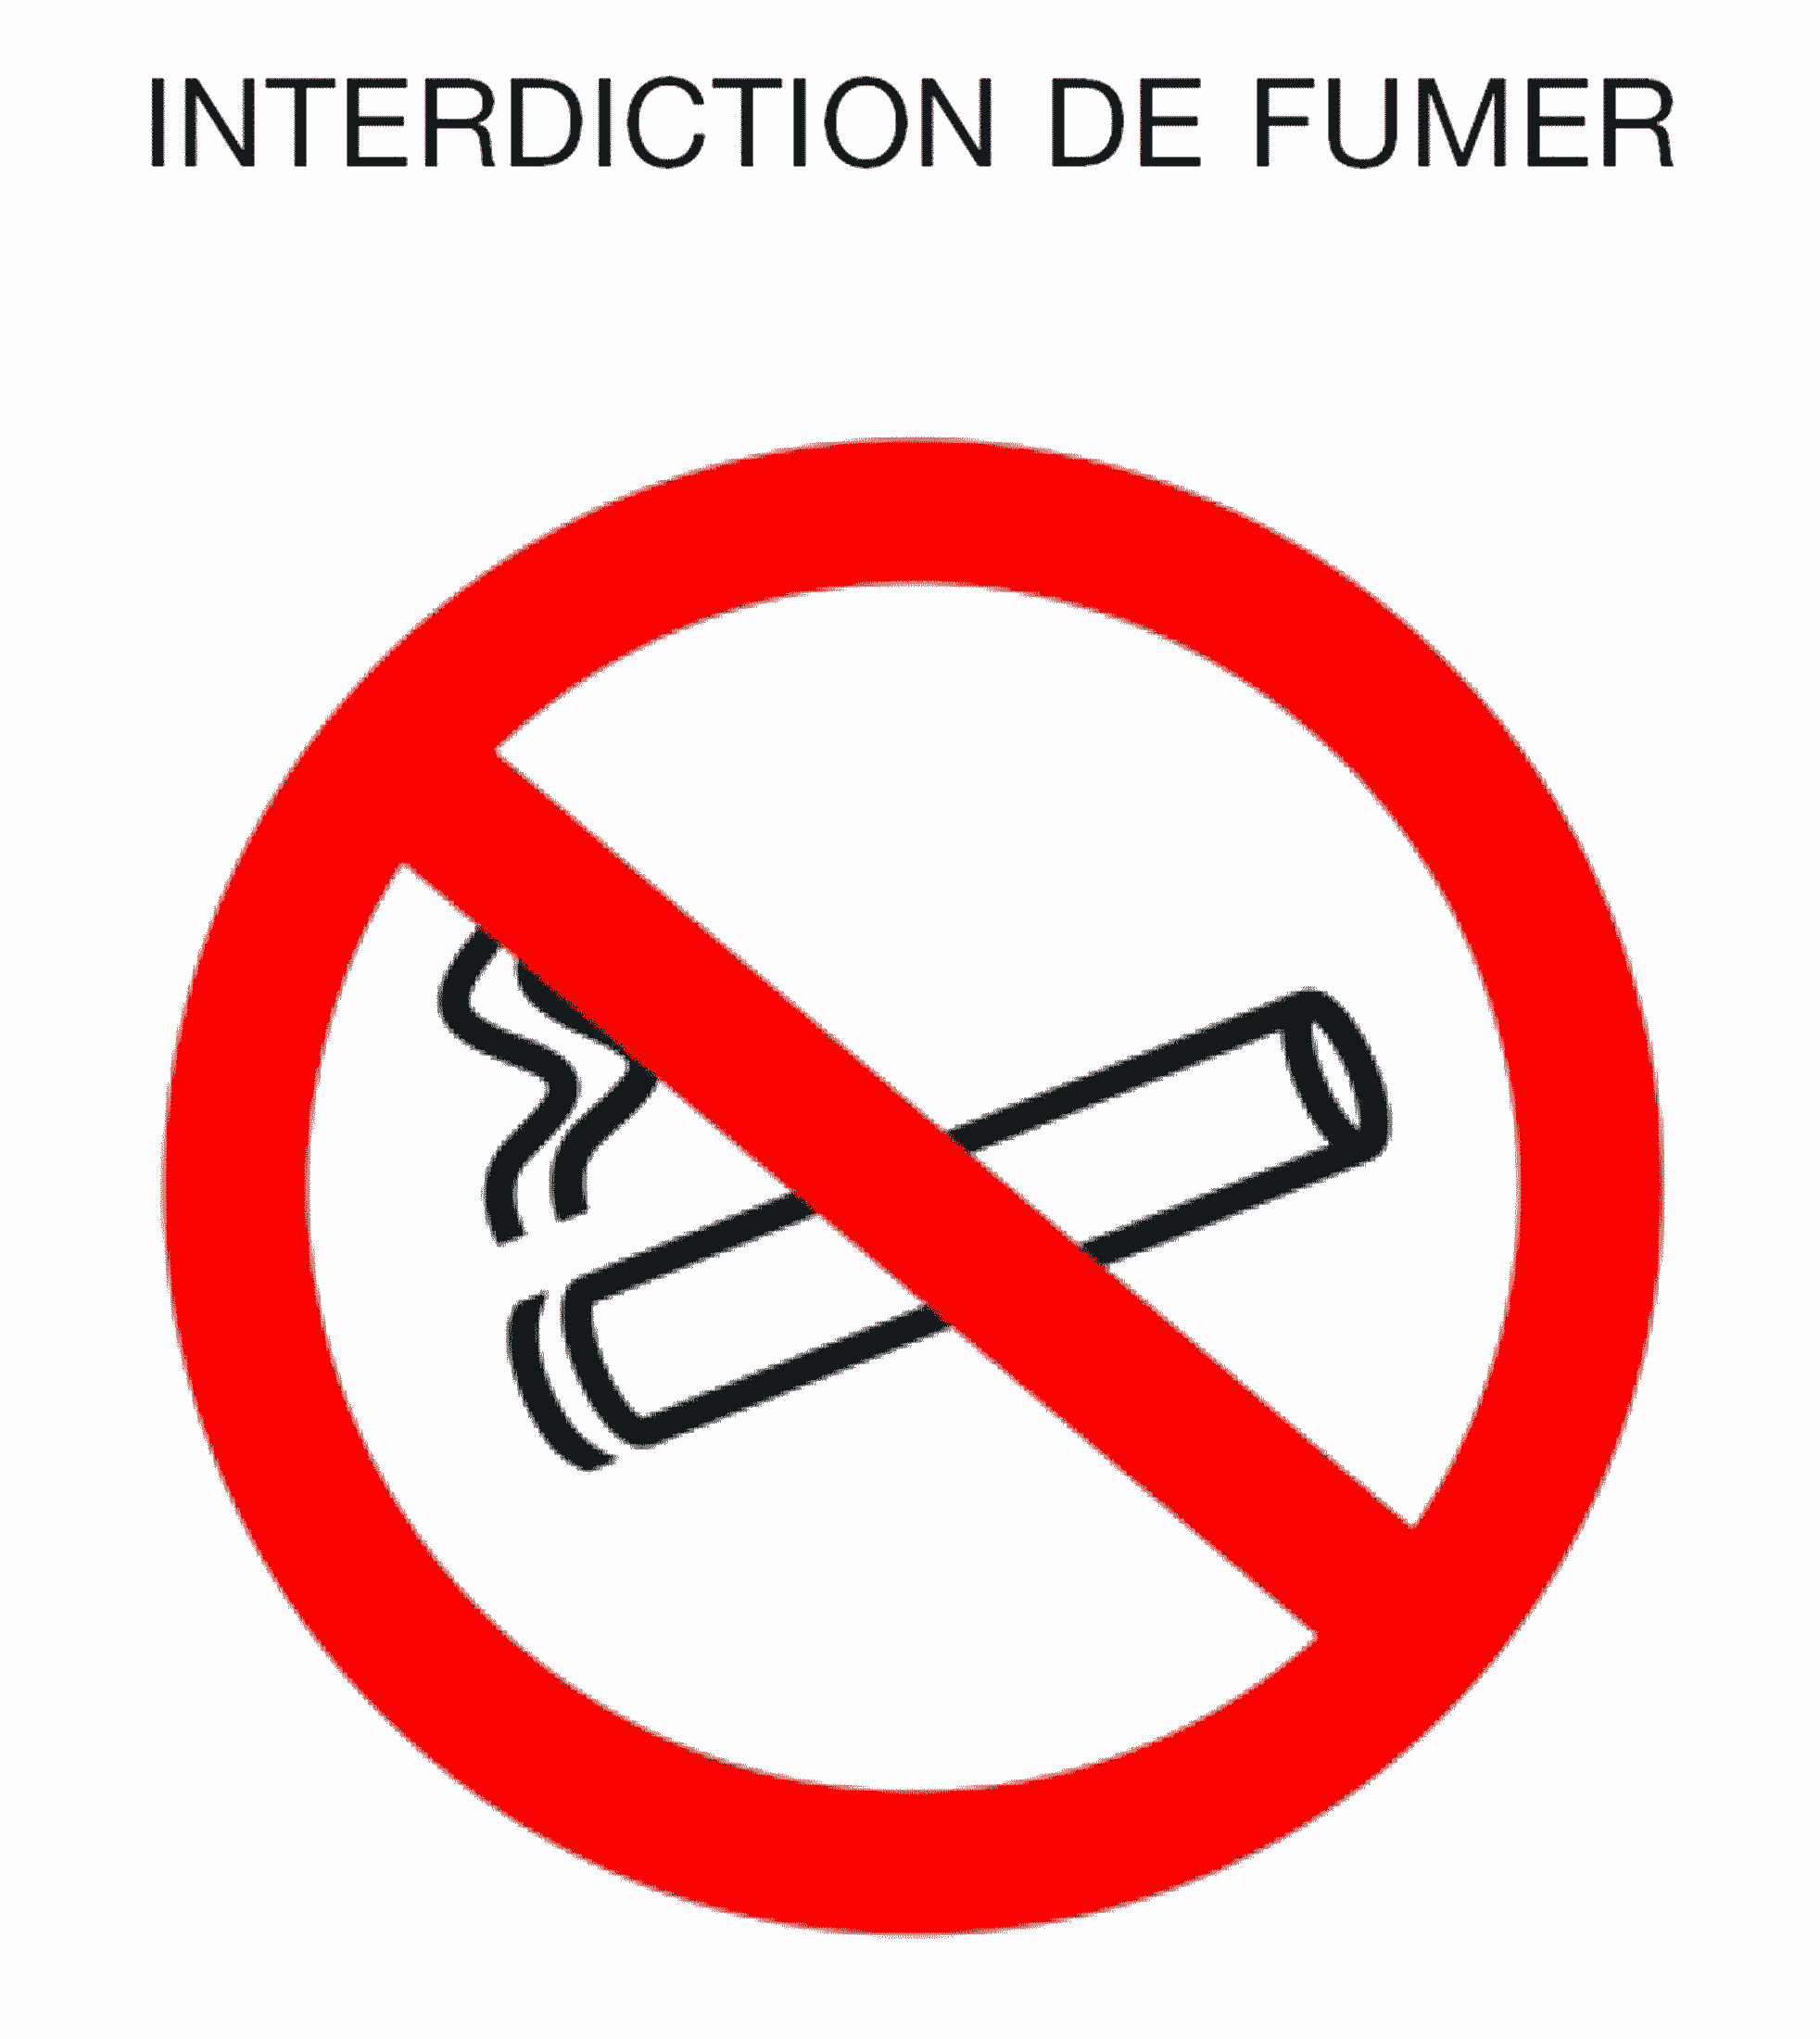 Affiche d'interdiction de fumer à l'image d'un panneau routier de sens interdit avec une cigarette barrée, sur fond blanc, circulaire, sans inscription.